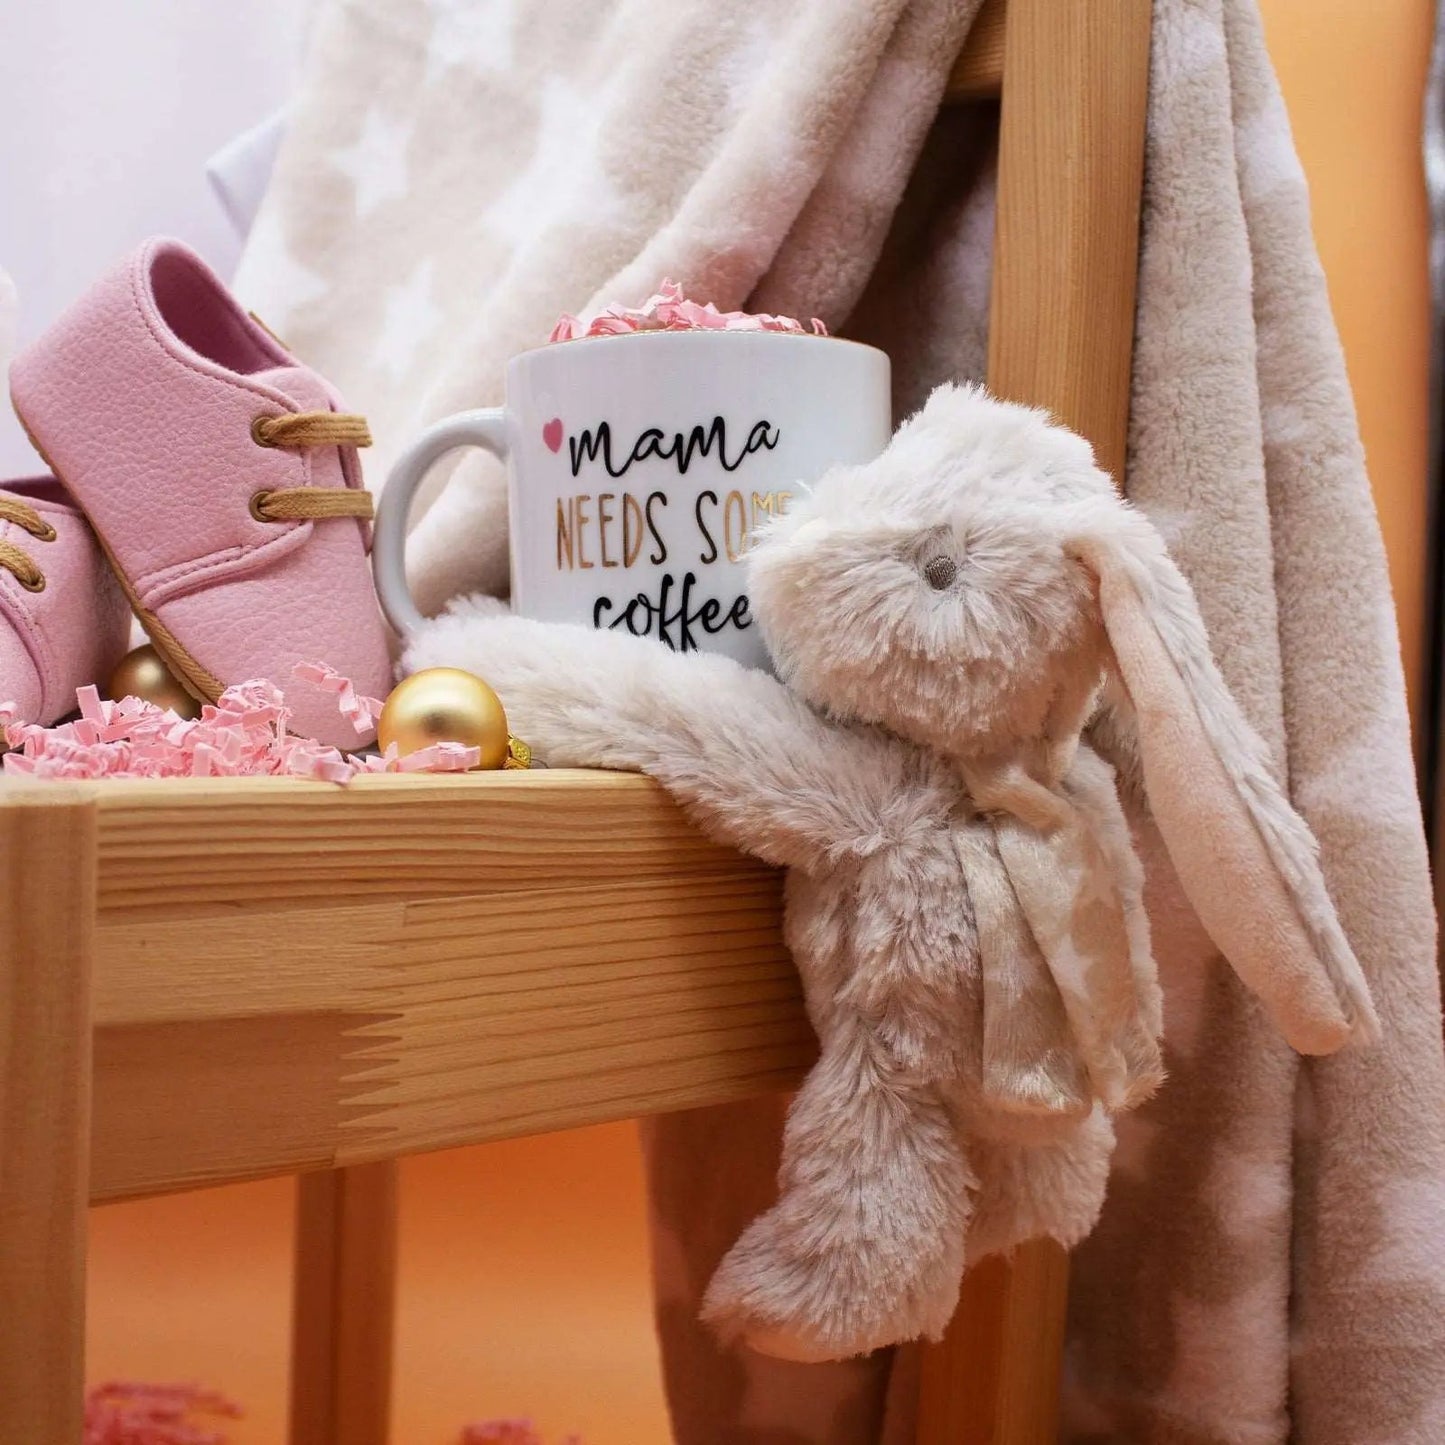 HelloBox! 6pc Infant Sleep & Play Gift Set (Bunny)